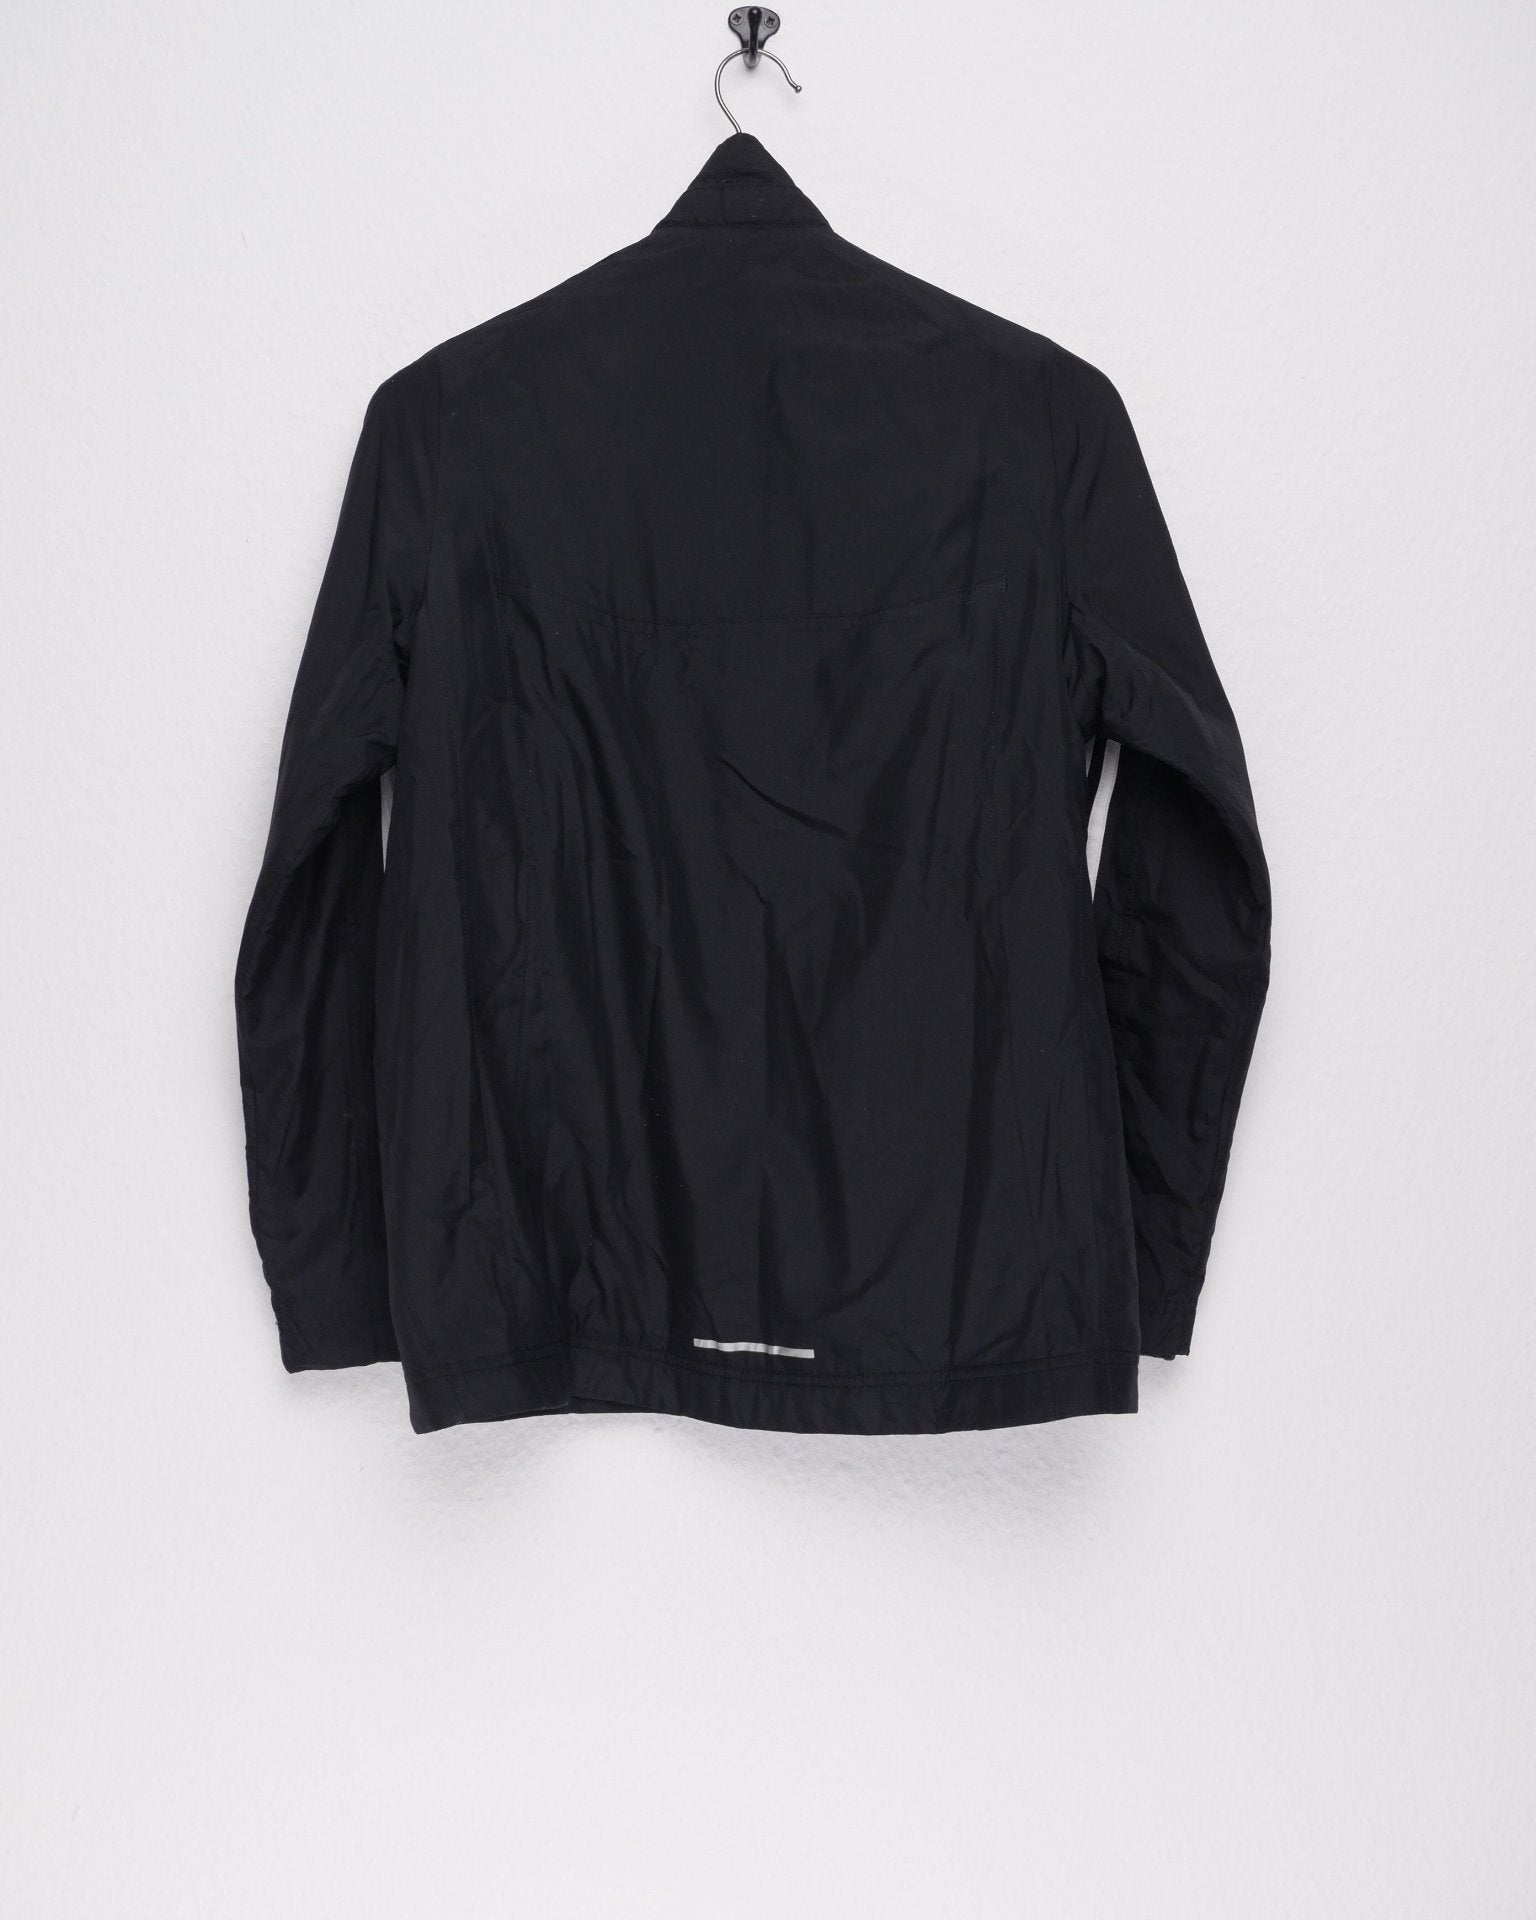 adidas printed Logo Vintage black Track Jacket - Peeces